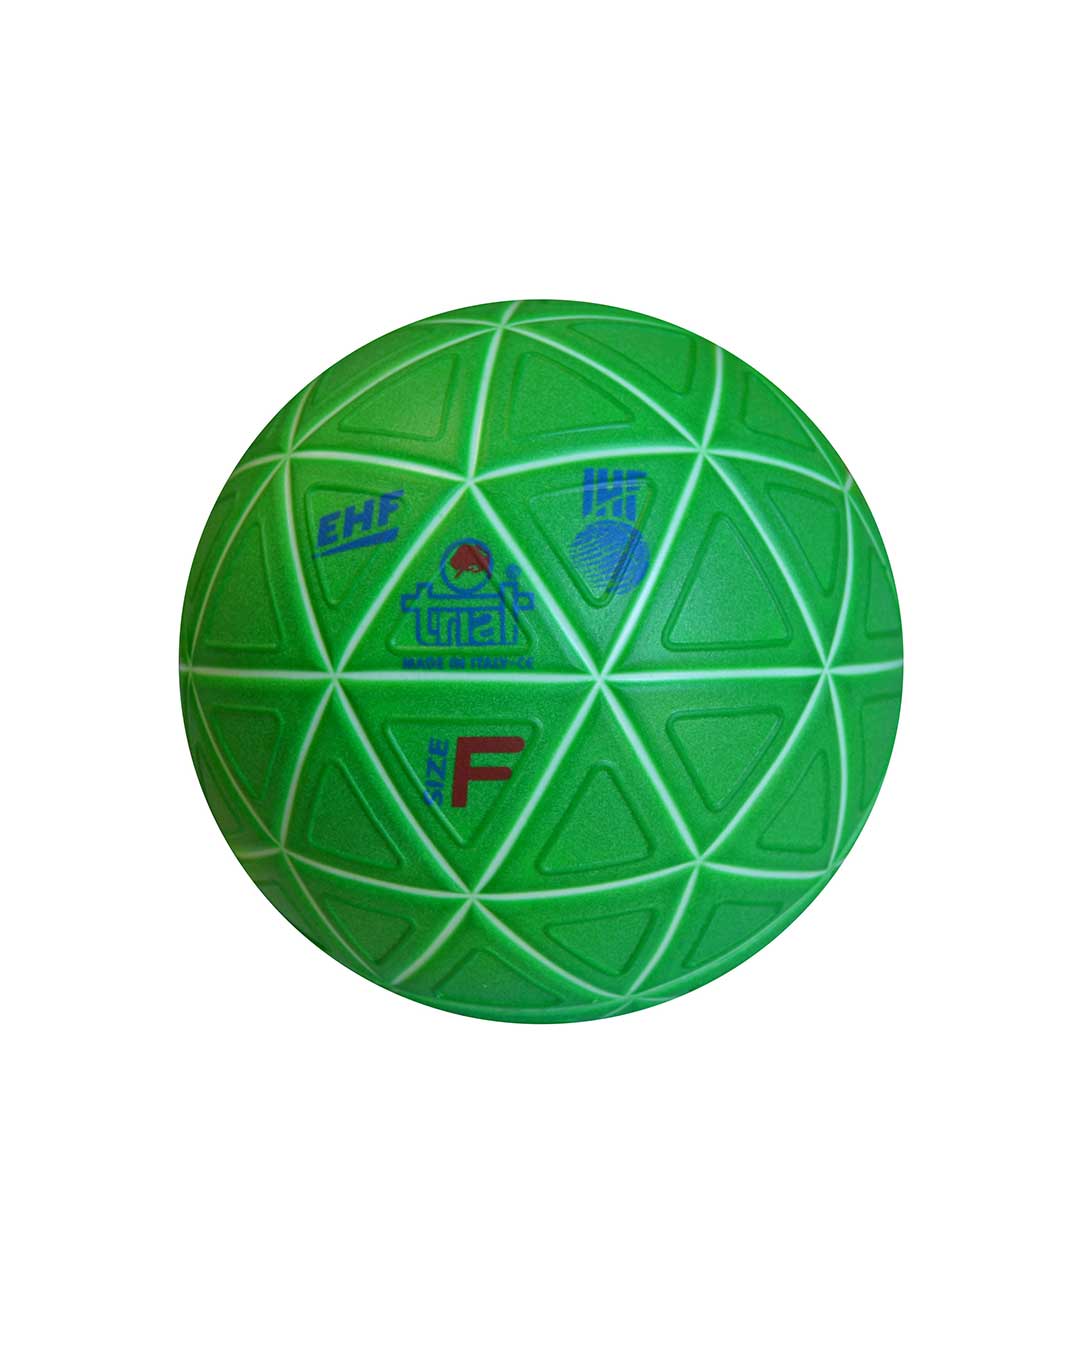 Balón de Handball playa marca Trial Modelo Ultima 36-3 N° 1 – Oficial